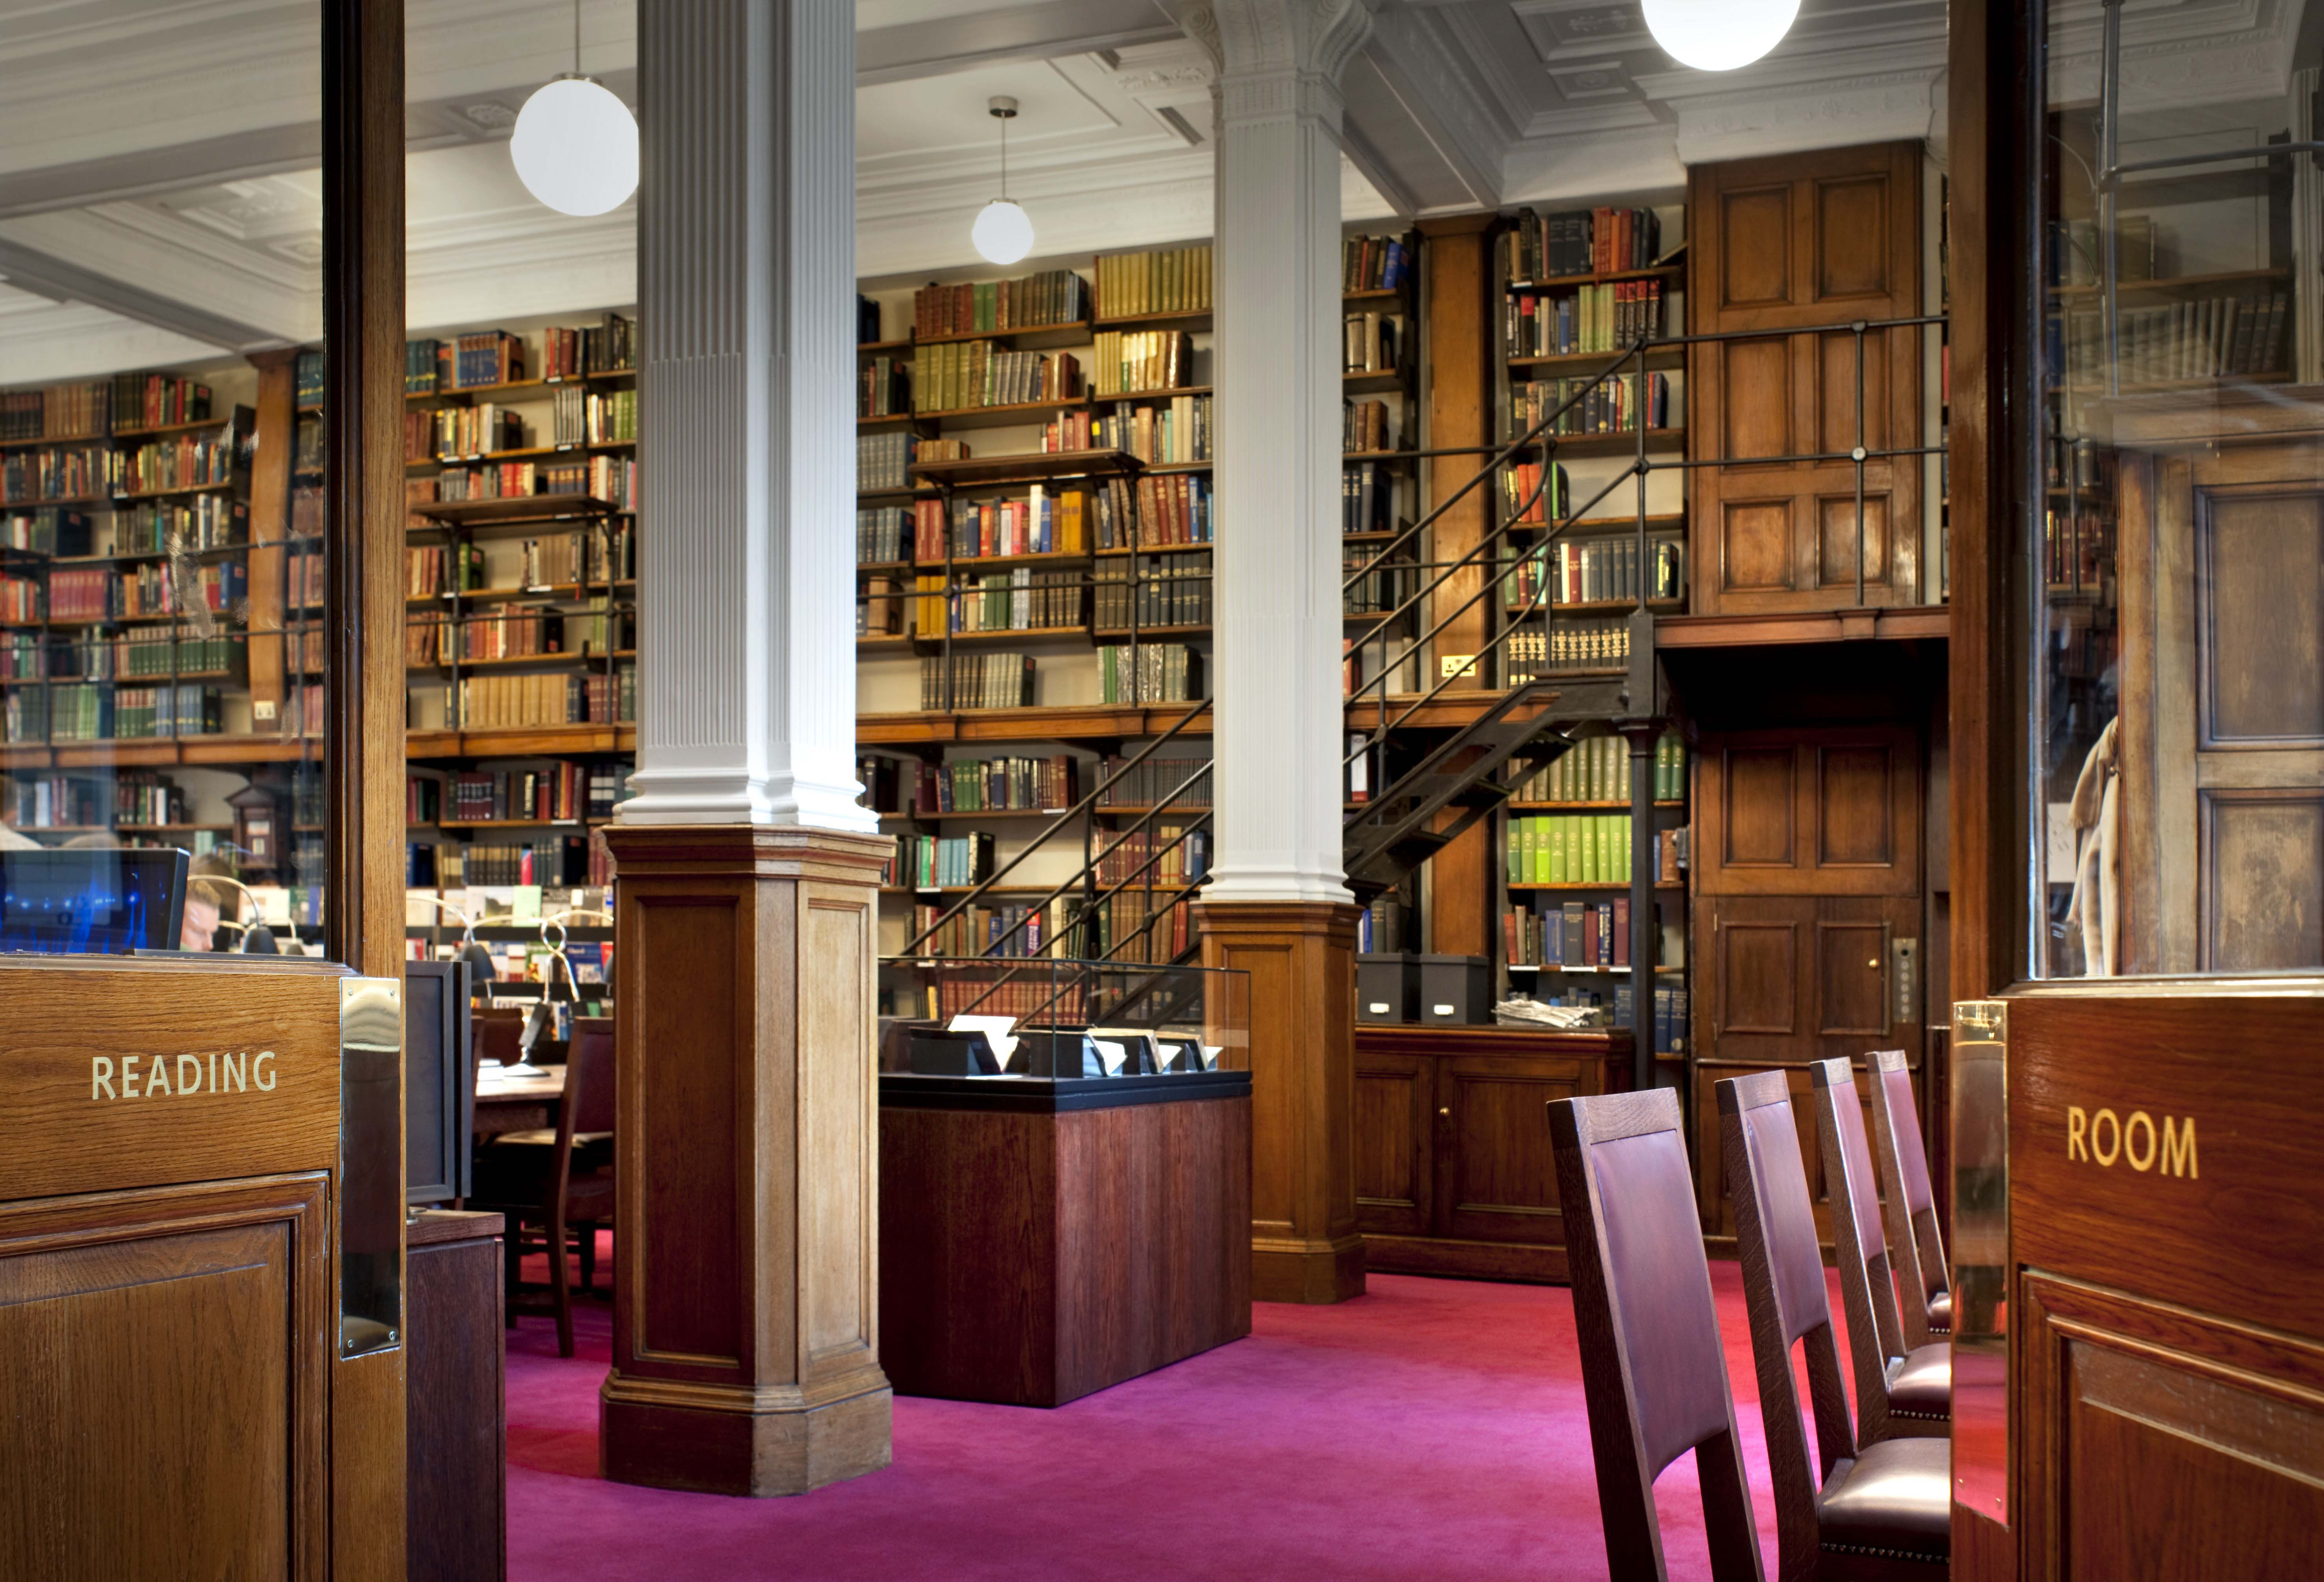 Ld library. Библиотека «University Club Library», Нью- Йорк, США. (Peter Bond). Библиотека британского музея в Лондоне. Библиотека Кодрингтон Великобритания. Национальная библиотека Великобритании.